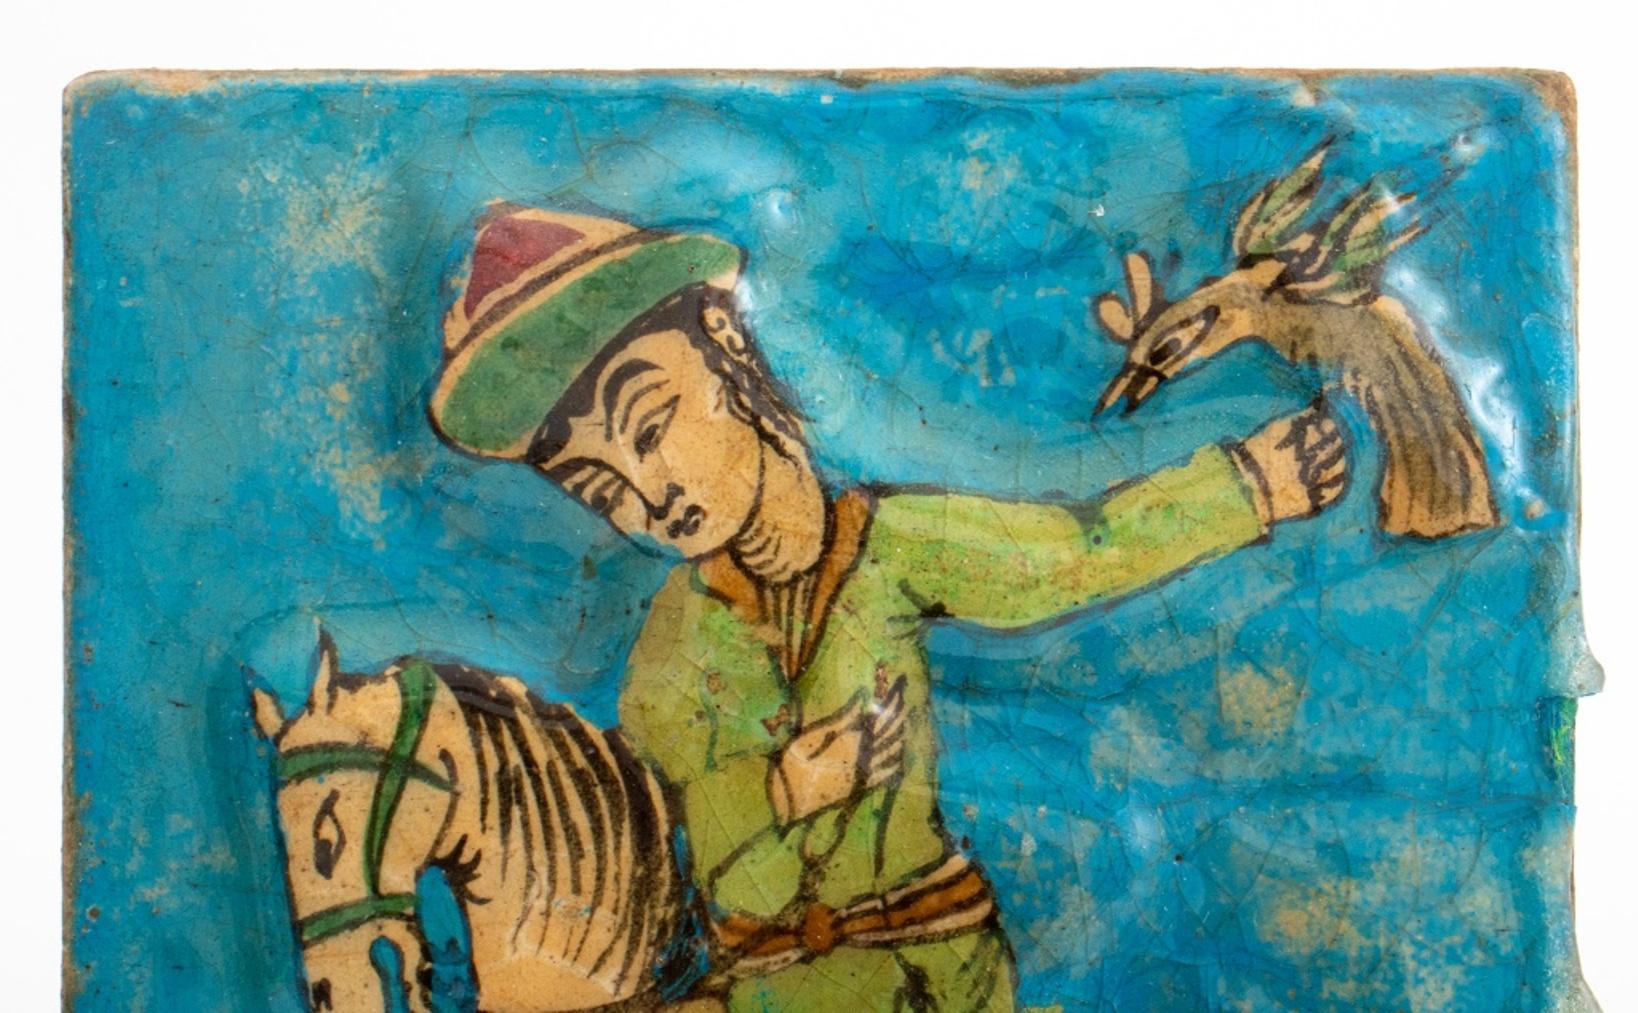 Persische glasierte Qajar-Fliese, 19. Jh., mit der Darstellung eines Bazdar oder Falkners zu Pferd, zu dessen Füßen ein gefleckter Jagdhund auf türkisfarbenem Grund läuft.

Abmessungen: 9,5